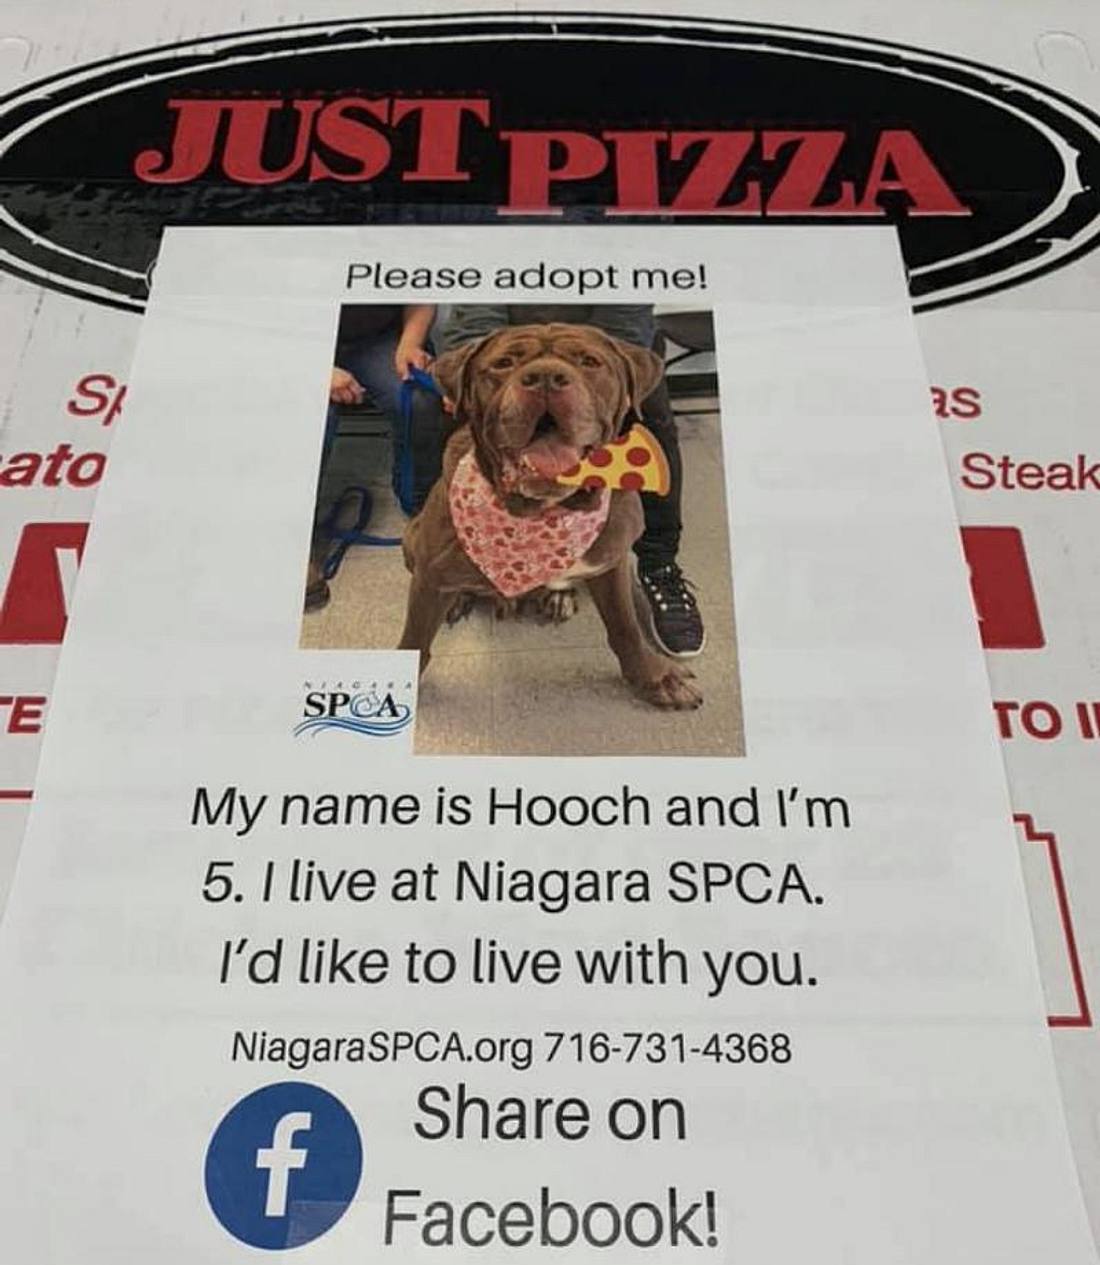 Pizzakarton mit Foto eines zur Adoption freigegebenen Hundes drauf